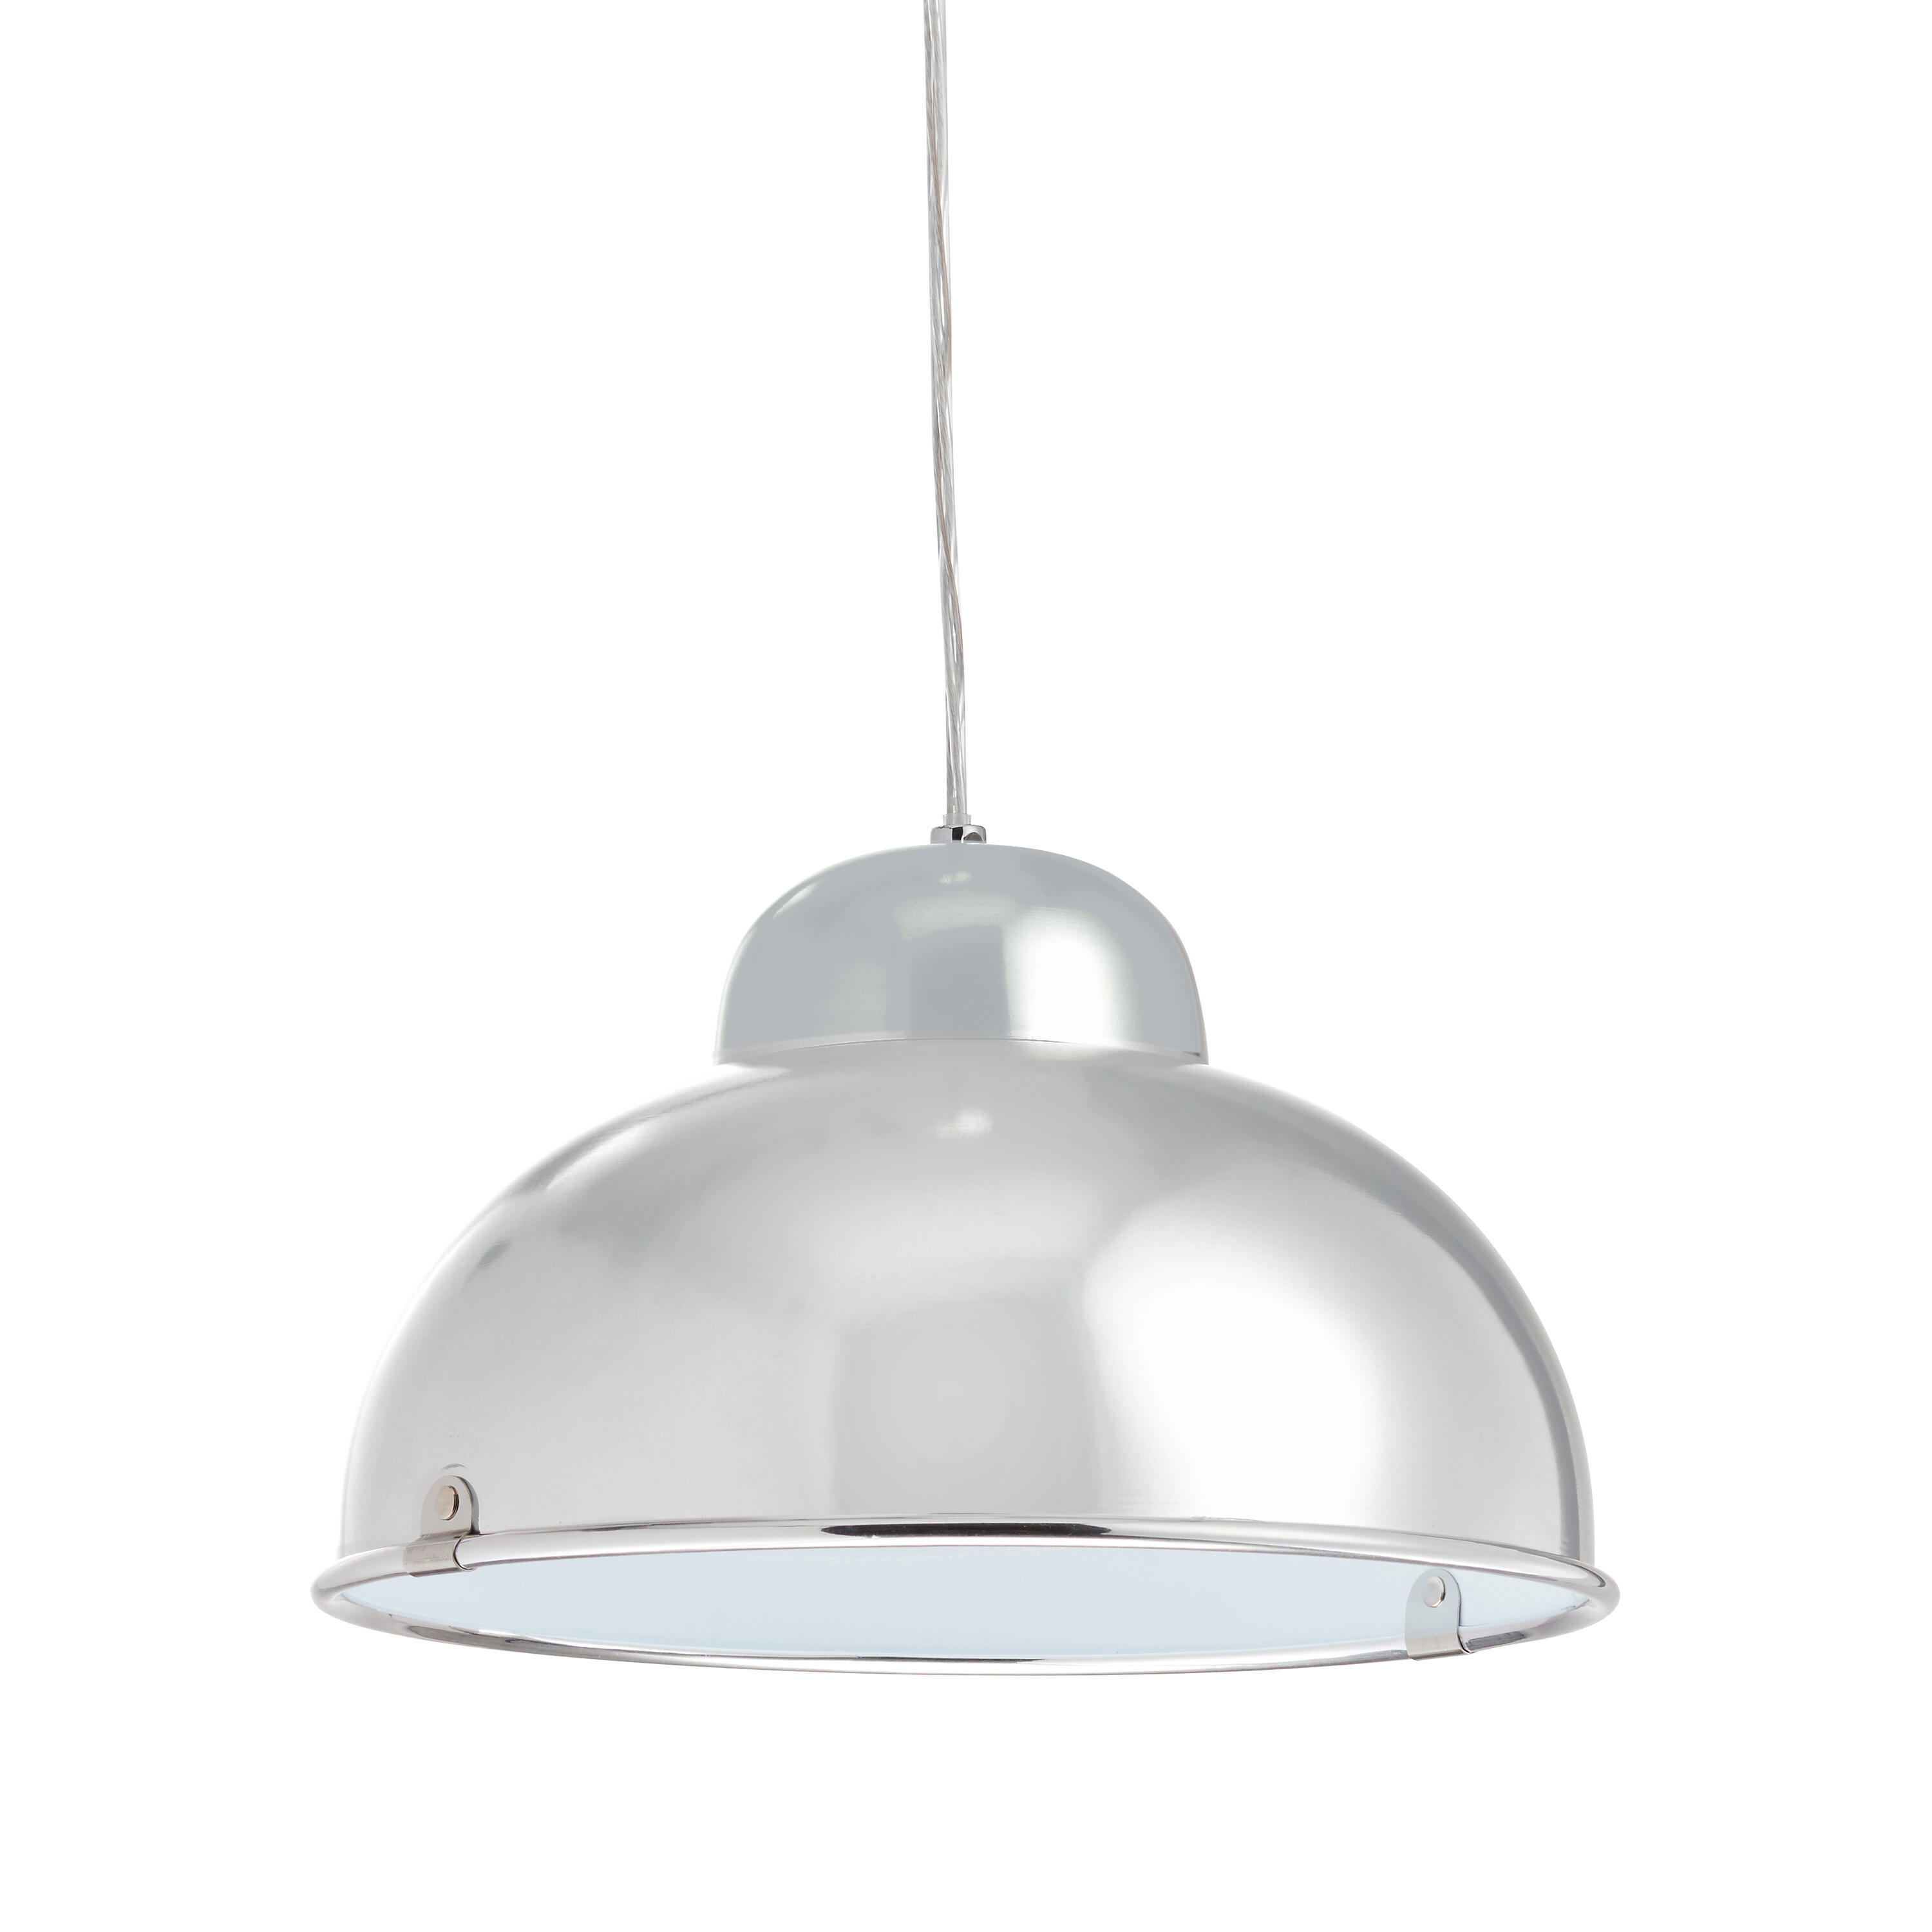 Lampadario Moderno Farell alluminio in metallo, D. 31 cm, INSPIRE - 5